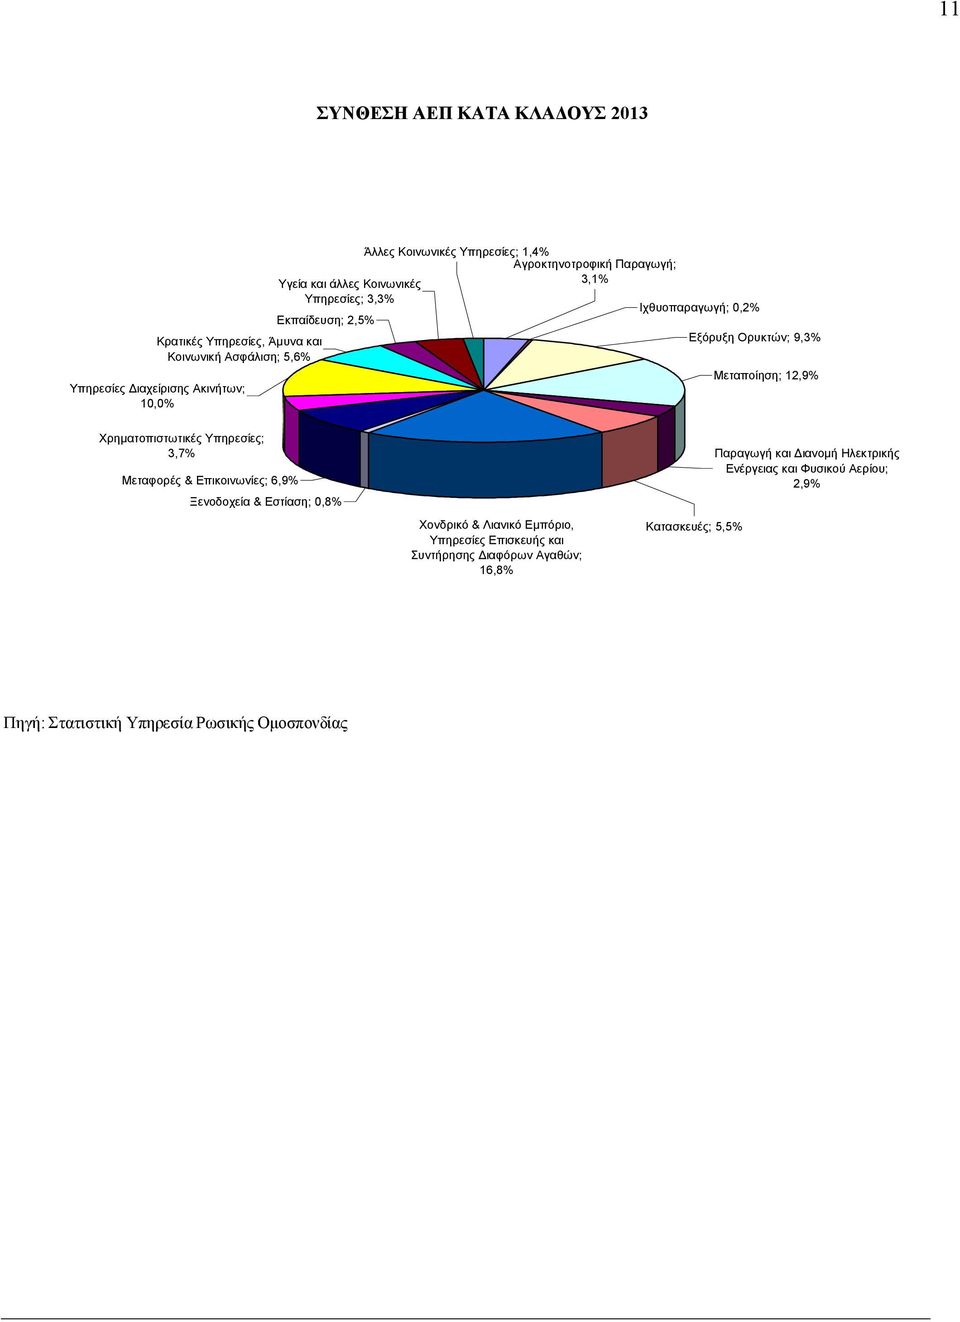 12,9% Χρηματοπιστωτικές Υπηρεσίες; 3,7% Μεταφορές & Επικοινωνίες; 6,9% Ξενοδοχεία & Εστίαση; 0,8% Χονδρικό & Λιανικό Εμπόριο, Υπηρεσίες Επισκευής και